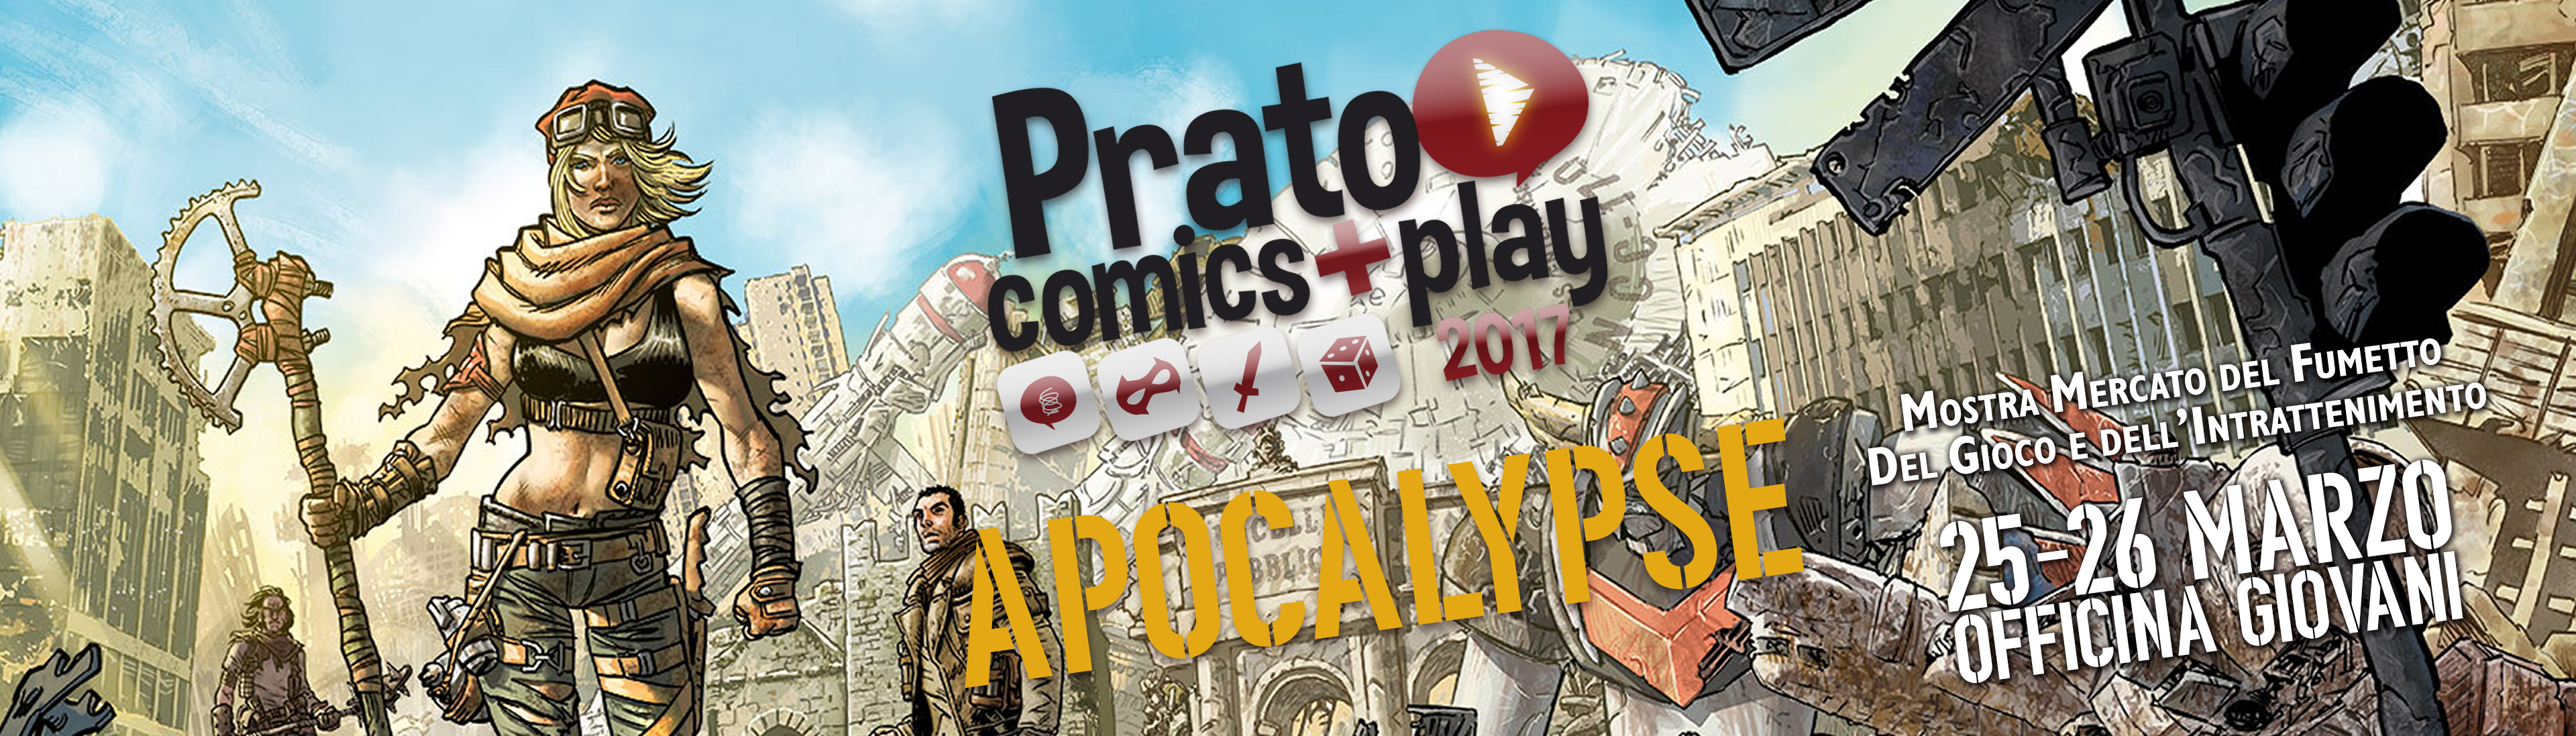 Prato comics + play 2017